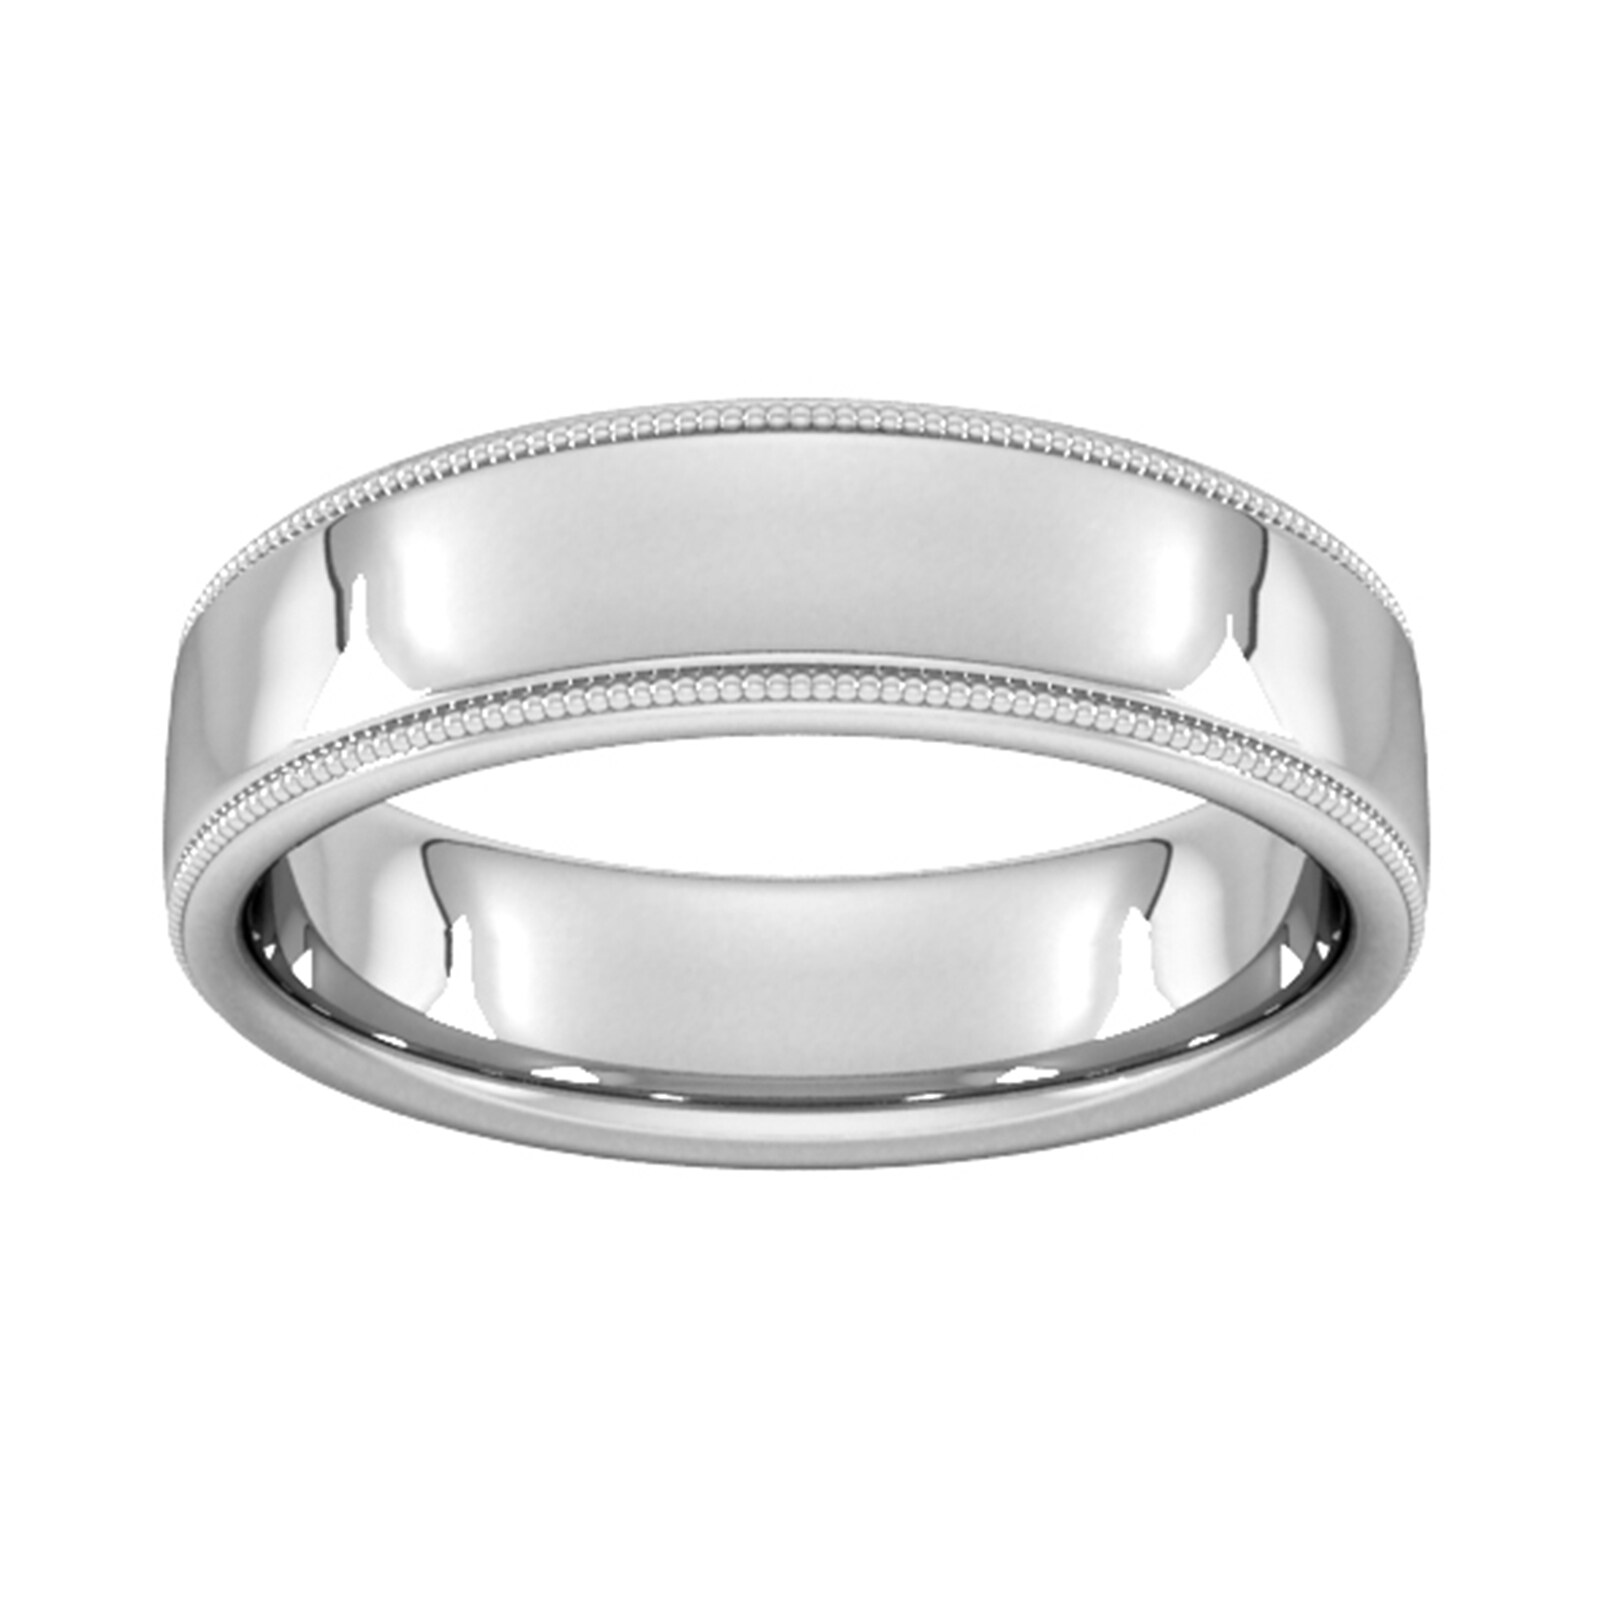 6mm Slight Court Heavy Milgrain Edge Wedding Ring In 18 Carat White Gold - Ring Size J